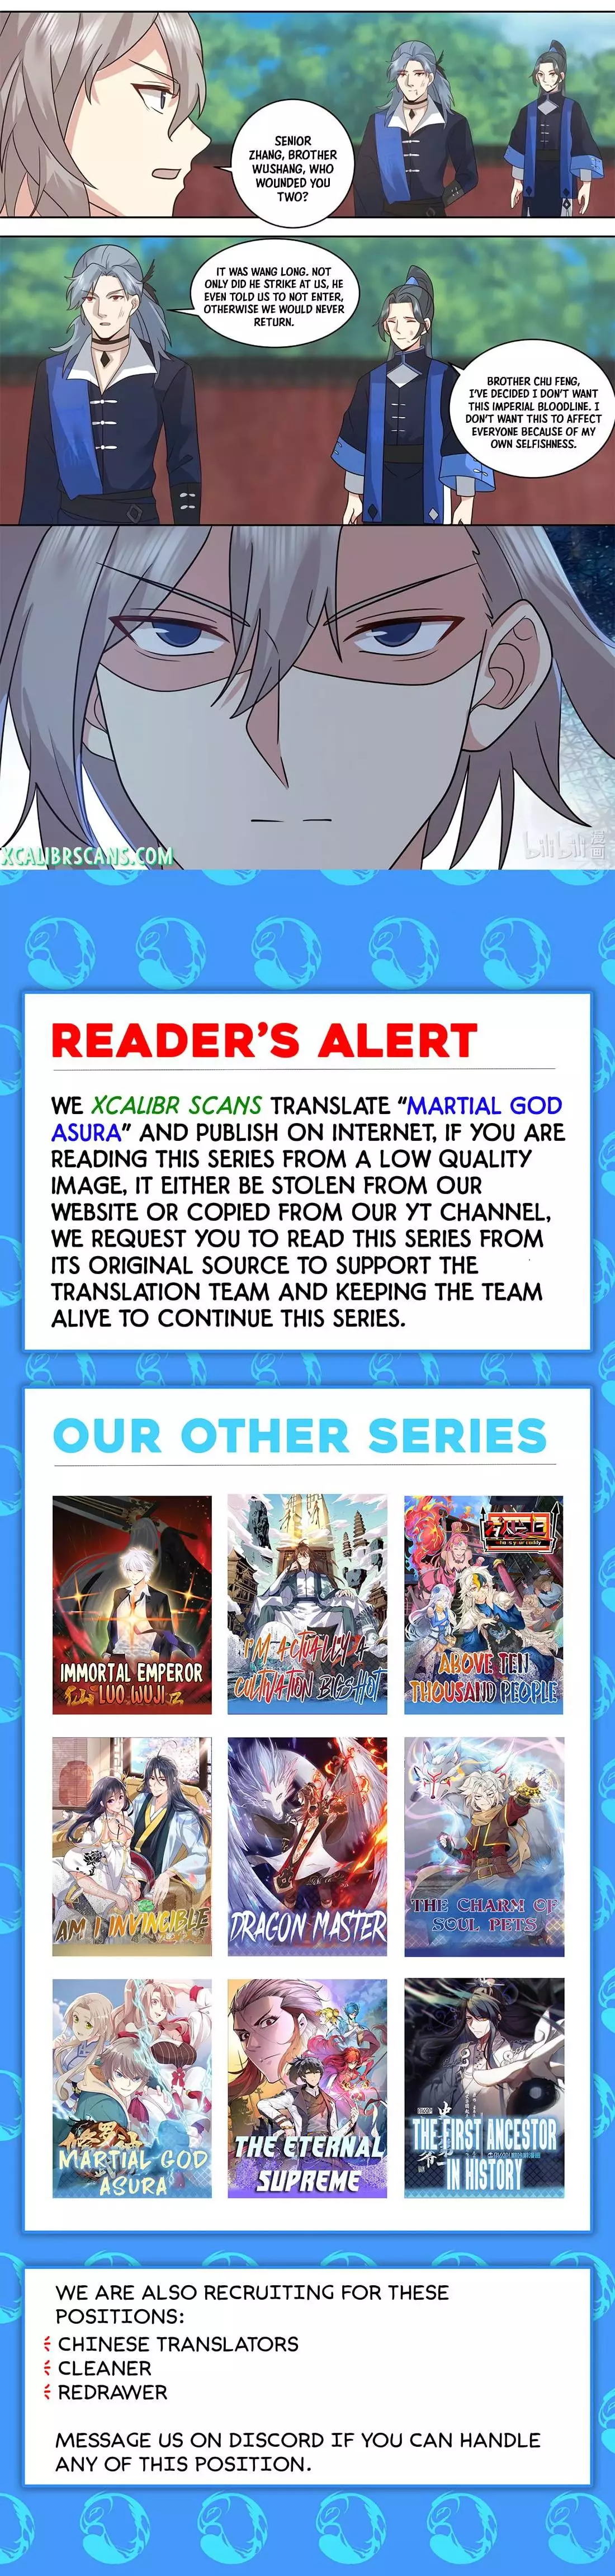 Martial God Asura - 501 page 10-05c3af66